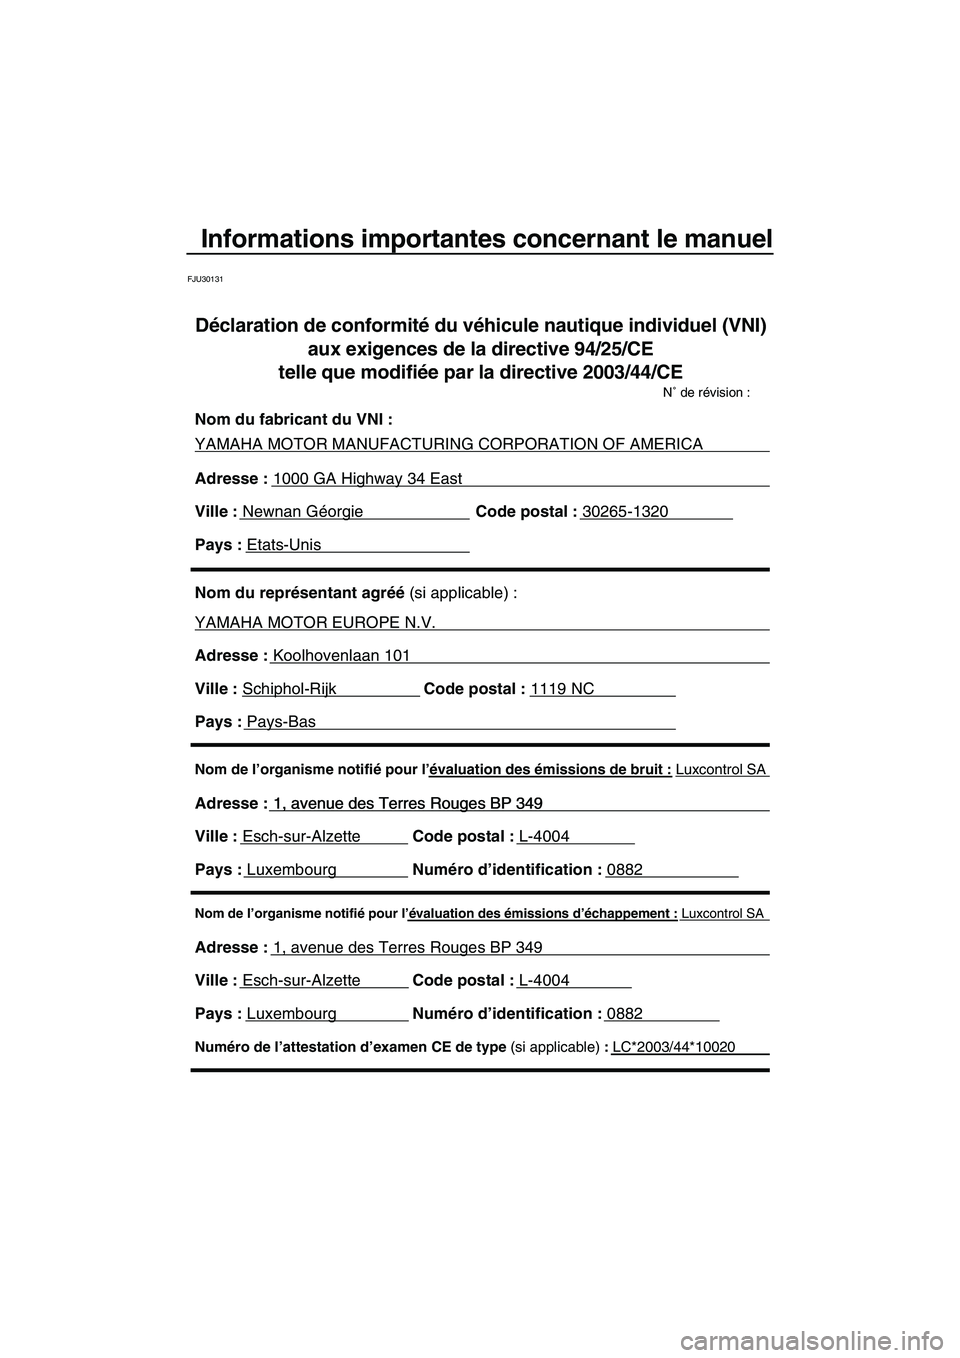 YAMAHA FX HO 2007  Notices Demploi (in French) Informations importantes concernant le manuel
FJU30131
Nom de l’organisme notifié pour l’évaluation des émissions d’échappement : Luxcontrol SA
Adresse : 1, avenue des Terres Rouges BP 349 
